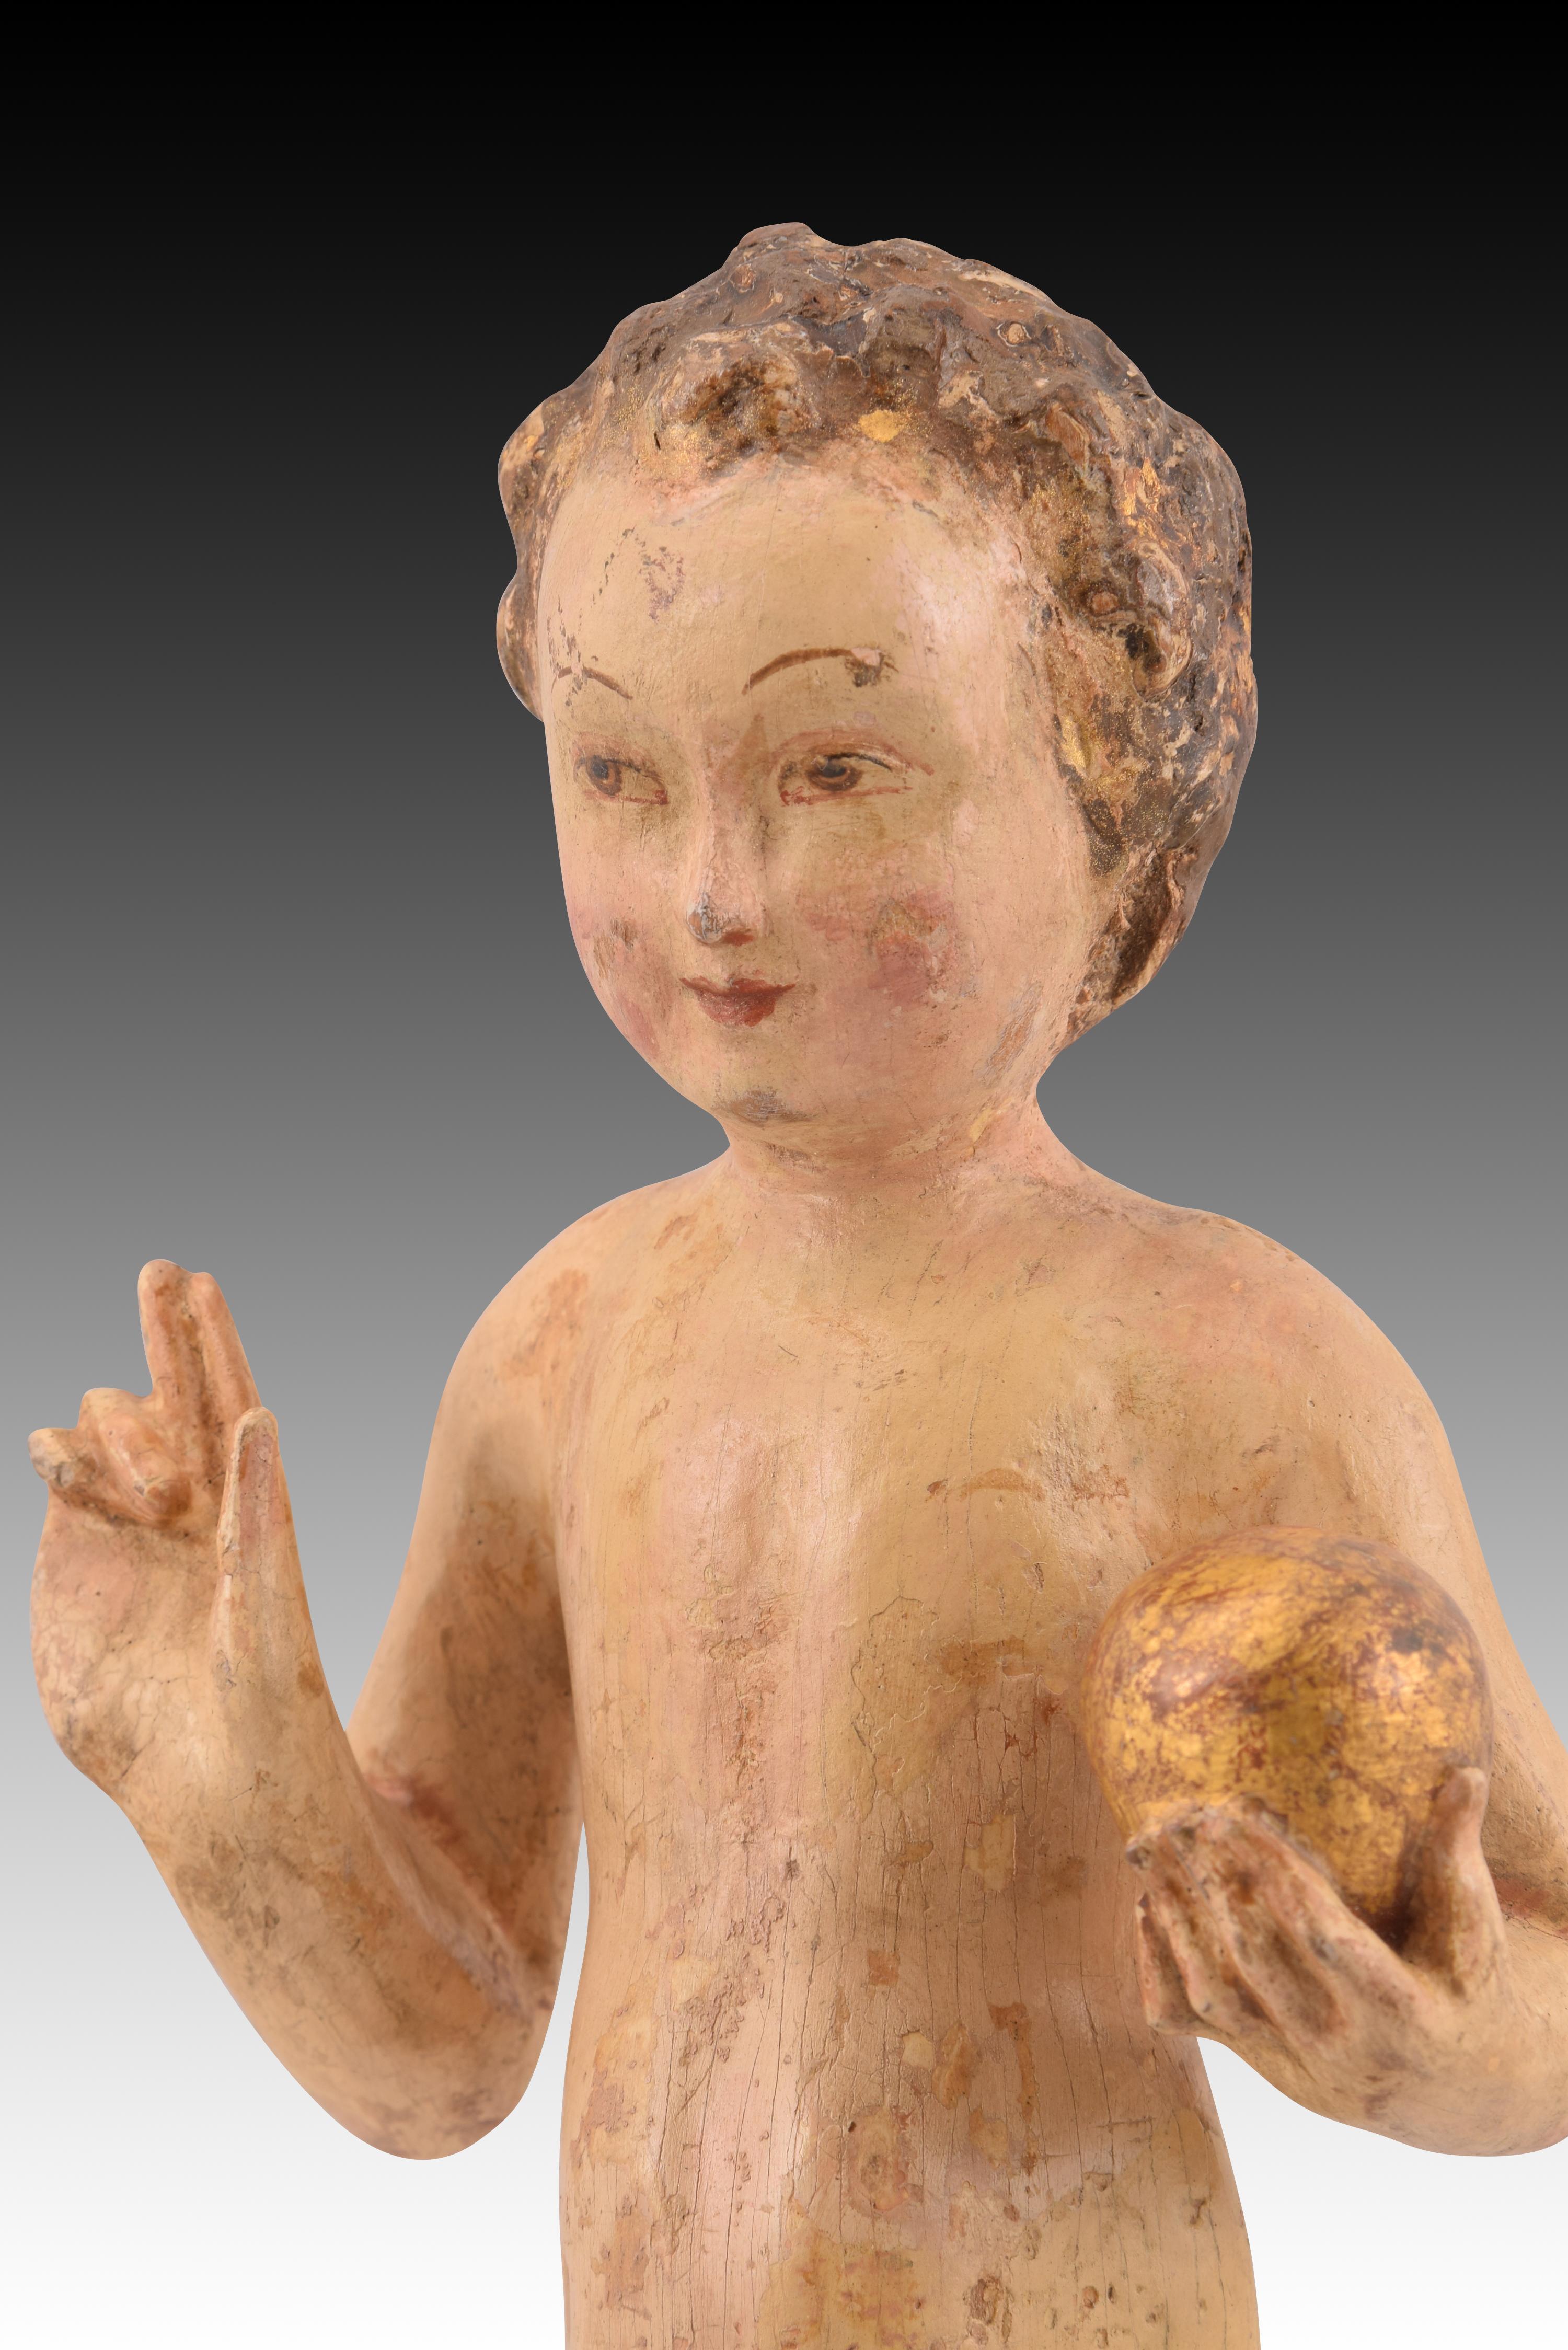 Autre Child Jesus Savior of the World Le bois. École flamande, 16e siècle.